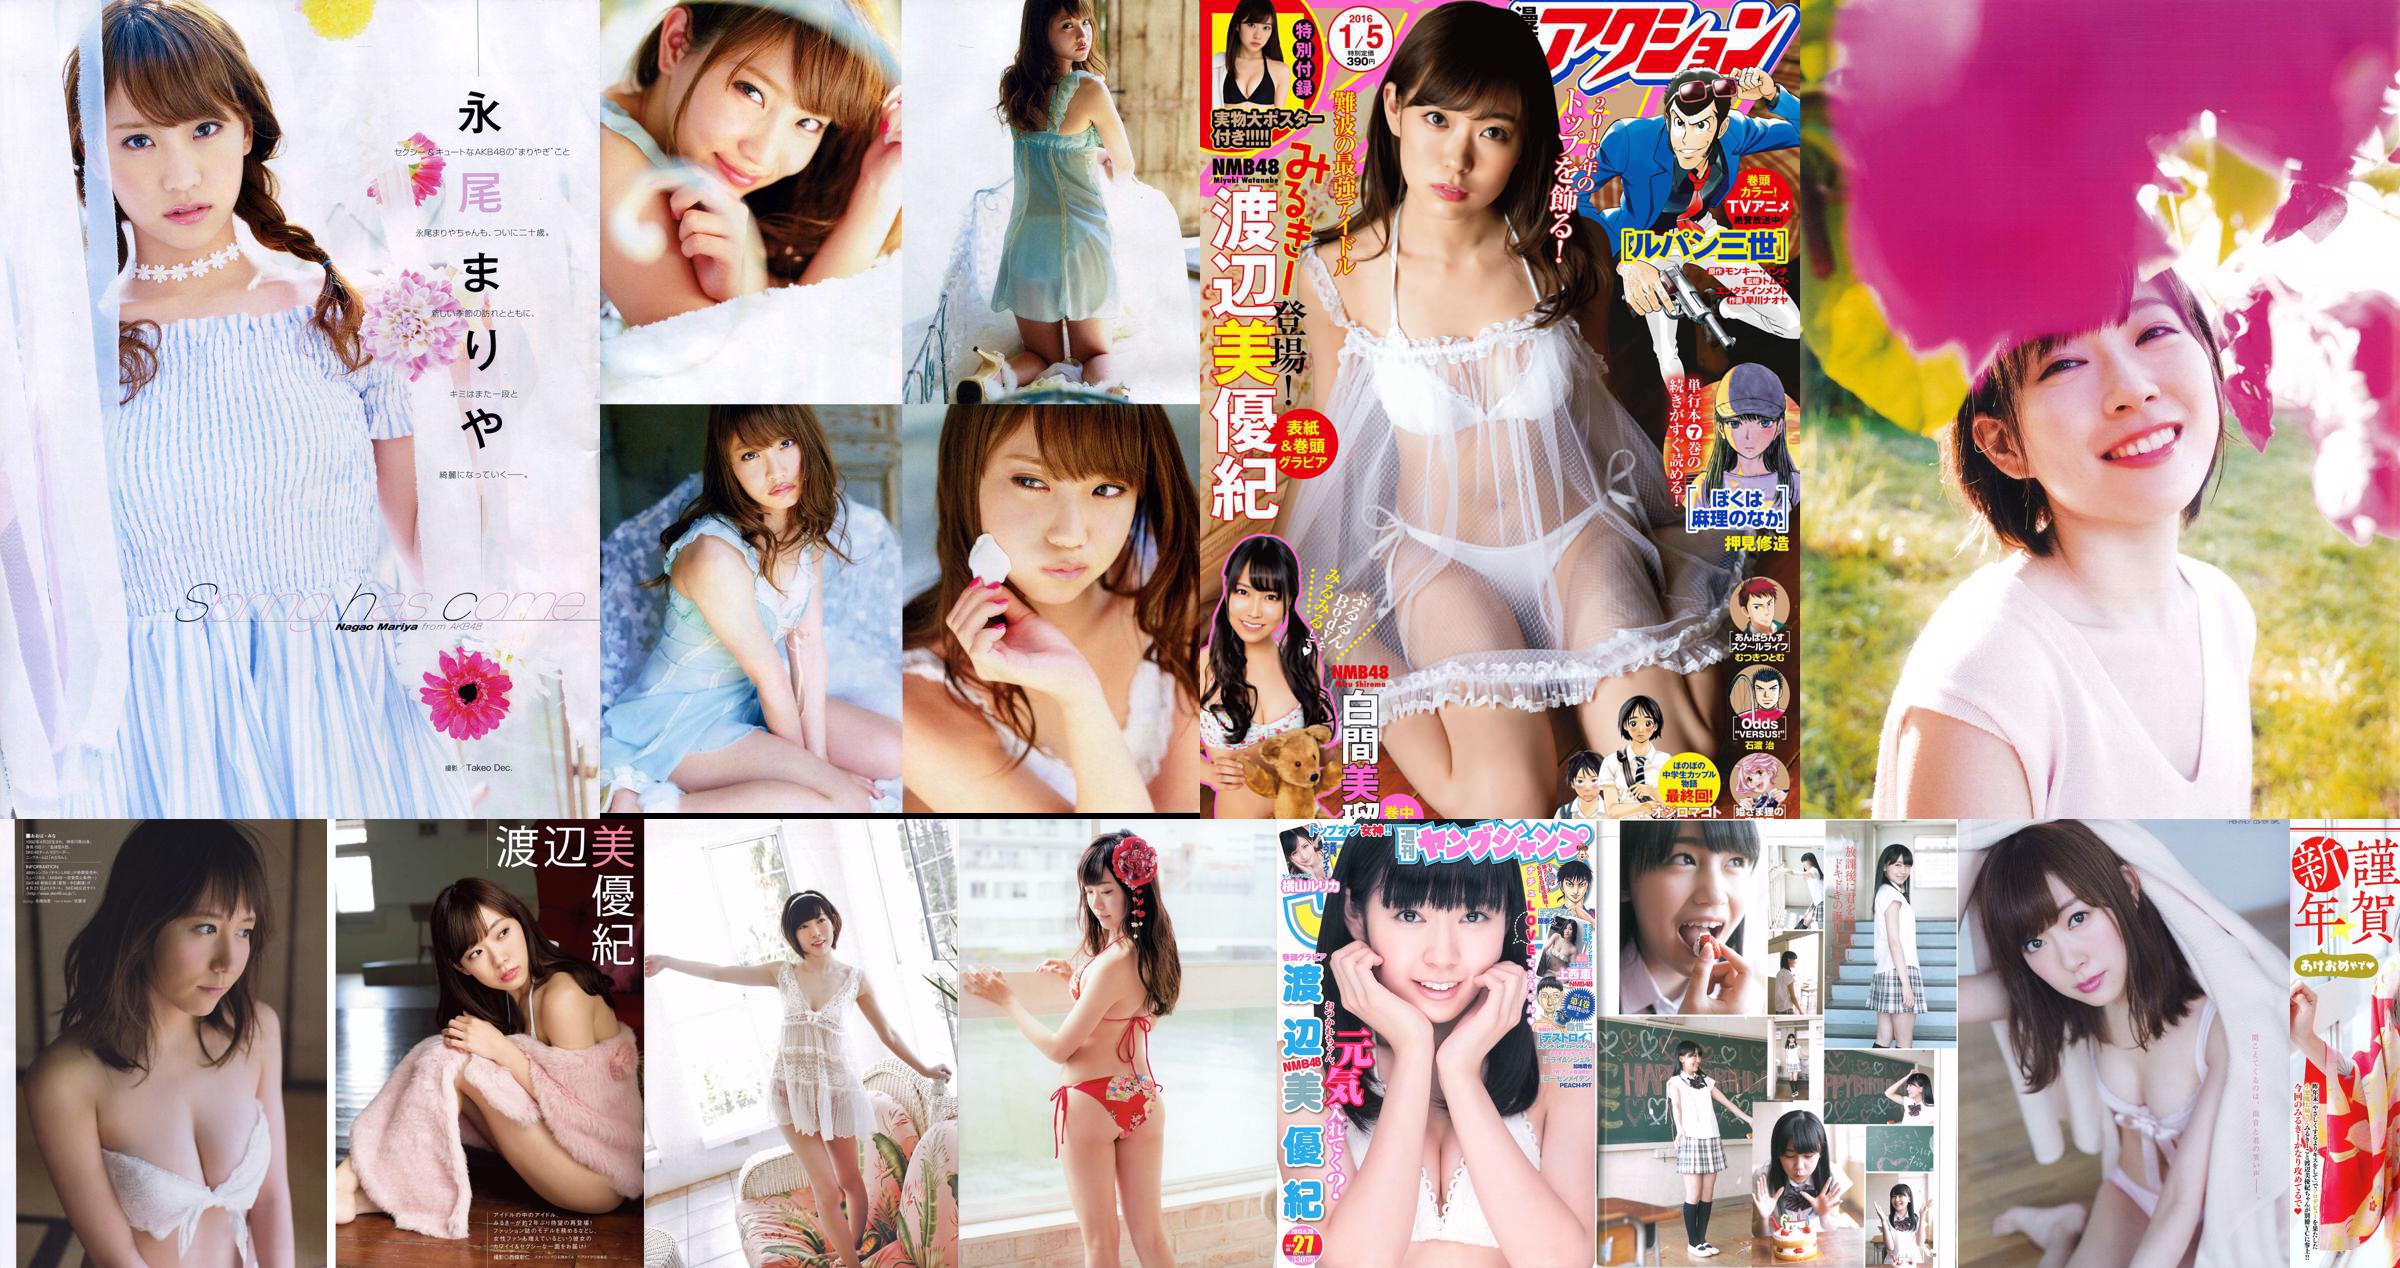 Miyuki Watanabe The most 上もが [Young Animal] 2012 No.24 Photo Magazine No.40e299 Page 1